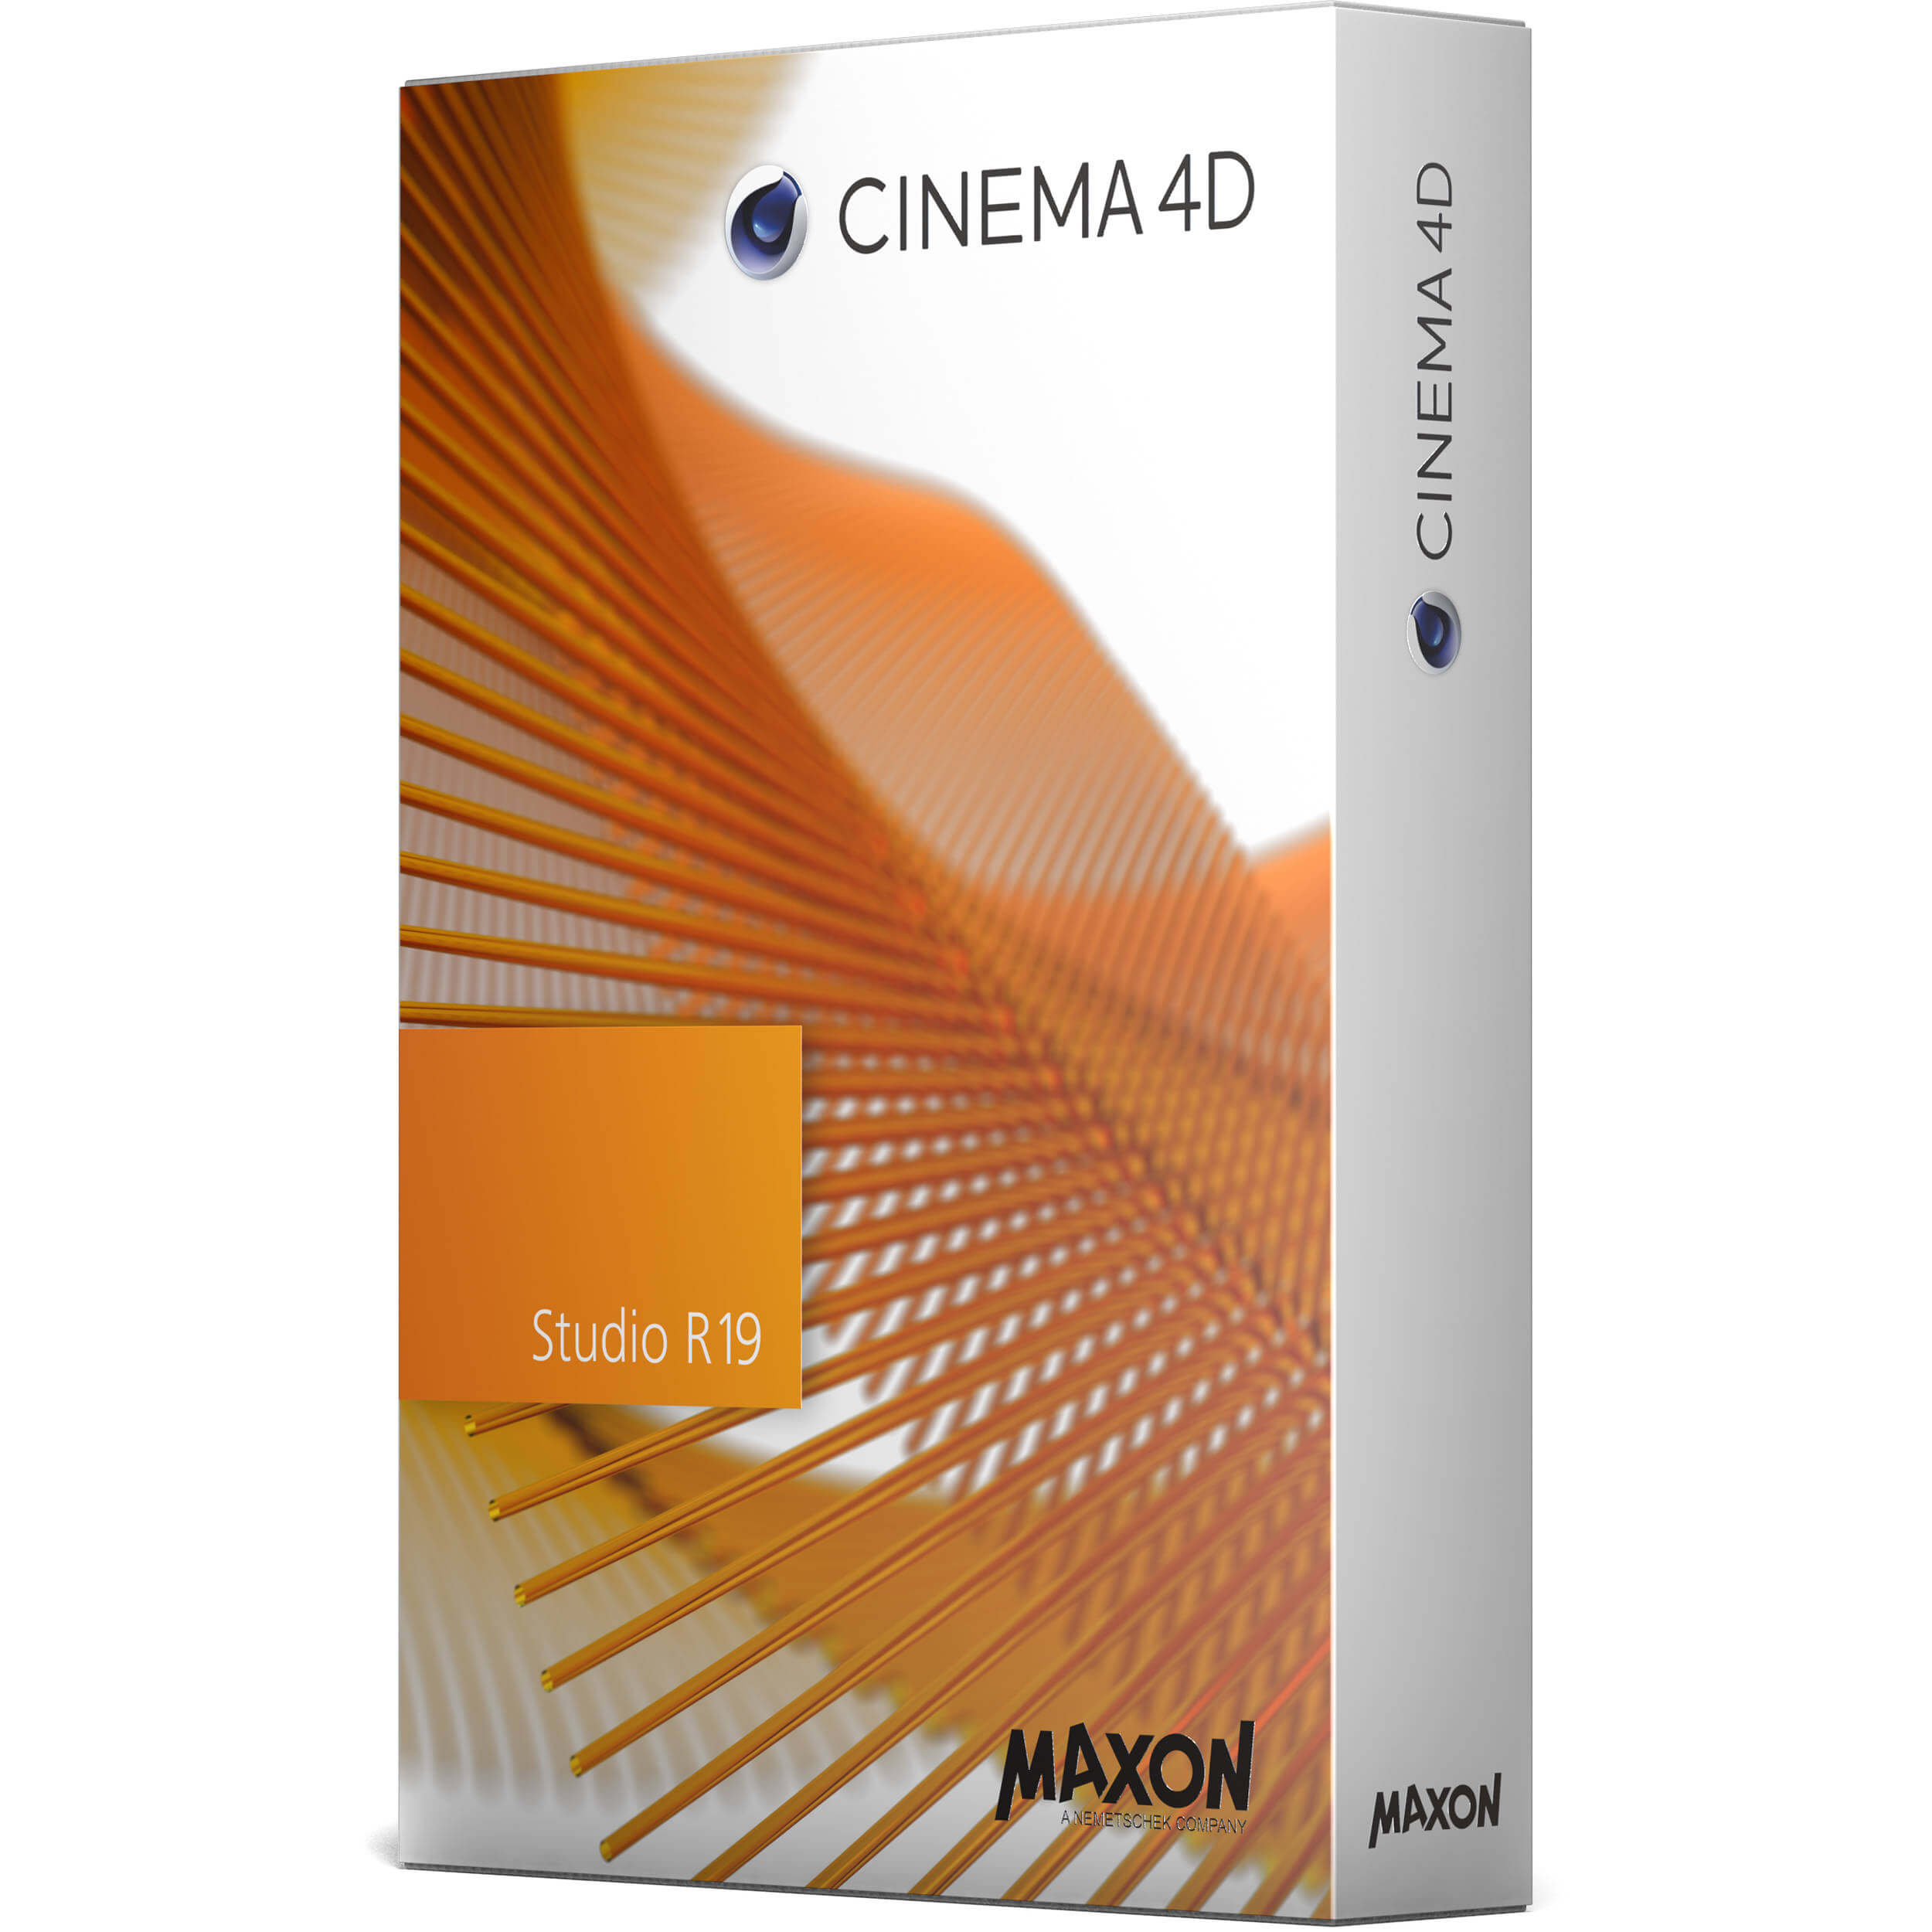 Cinema 4D Crack Keygen With Full Version Free 2021 Download